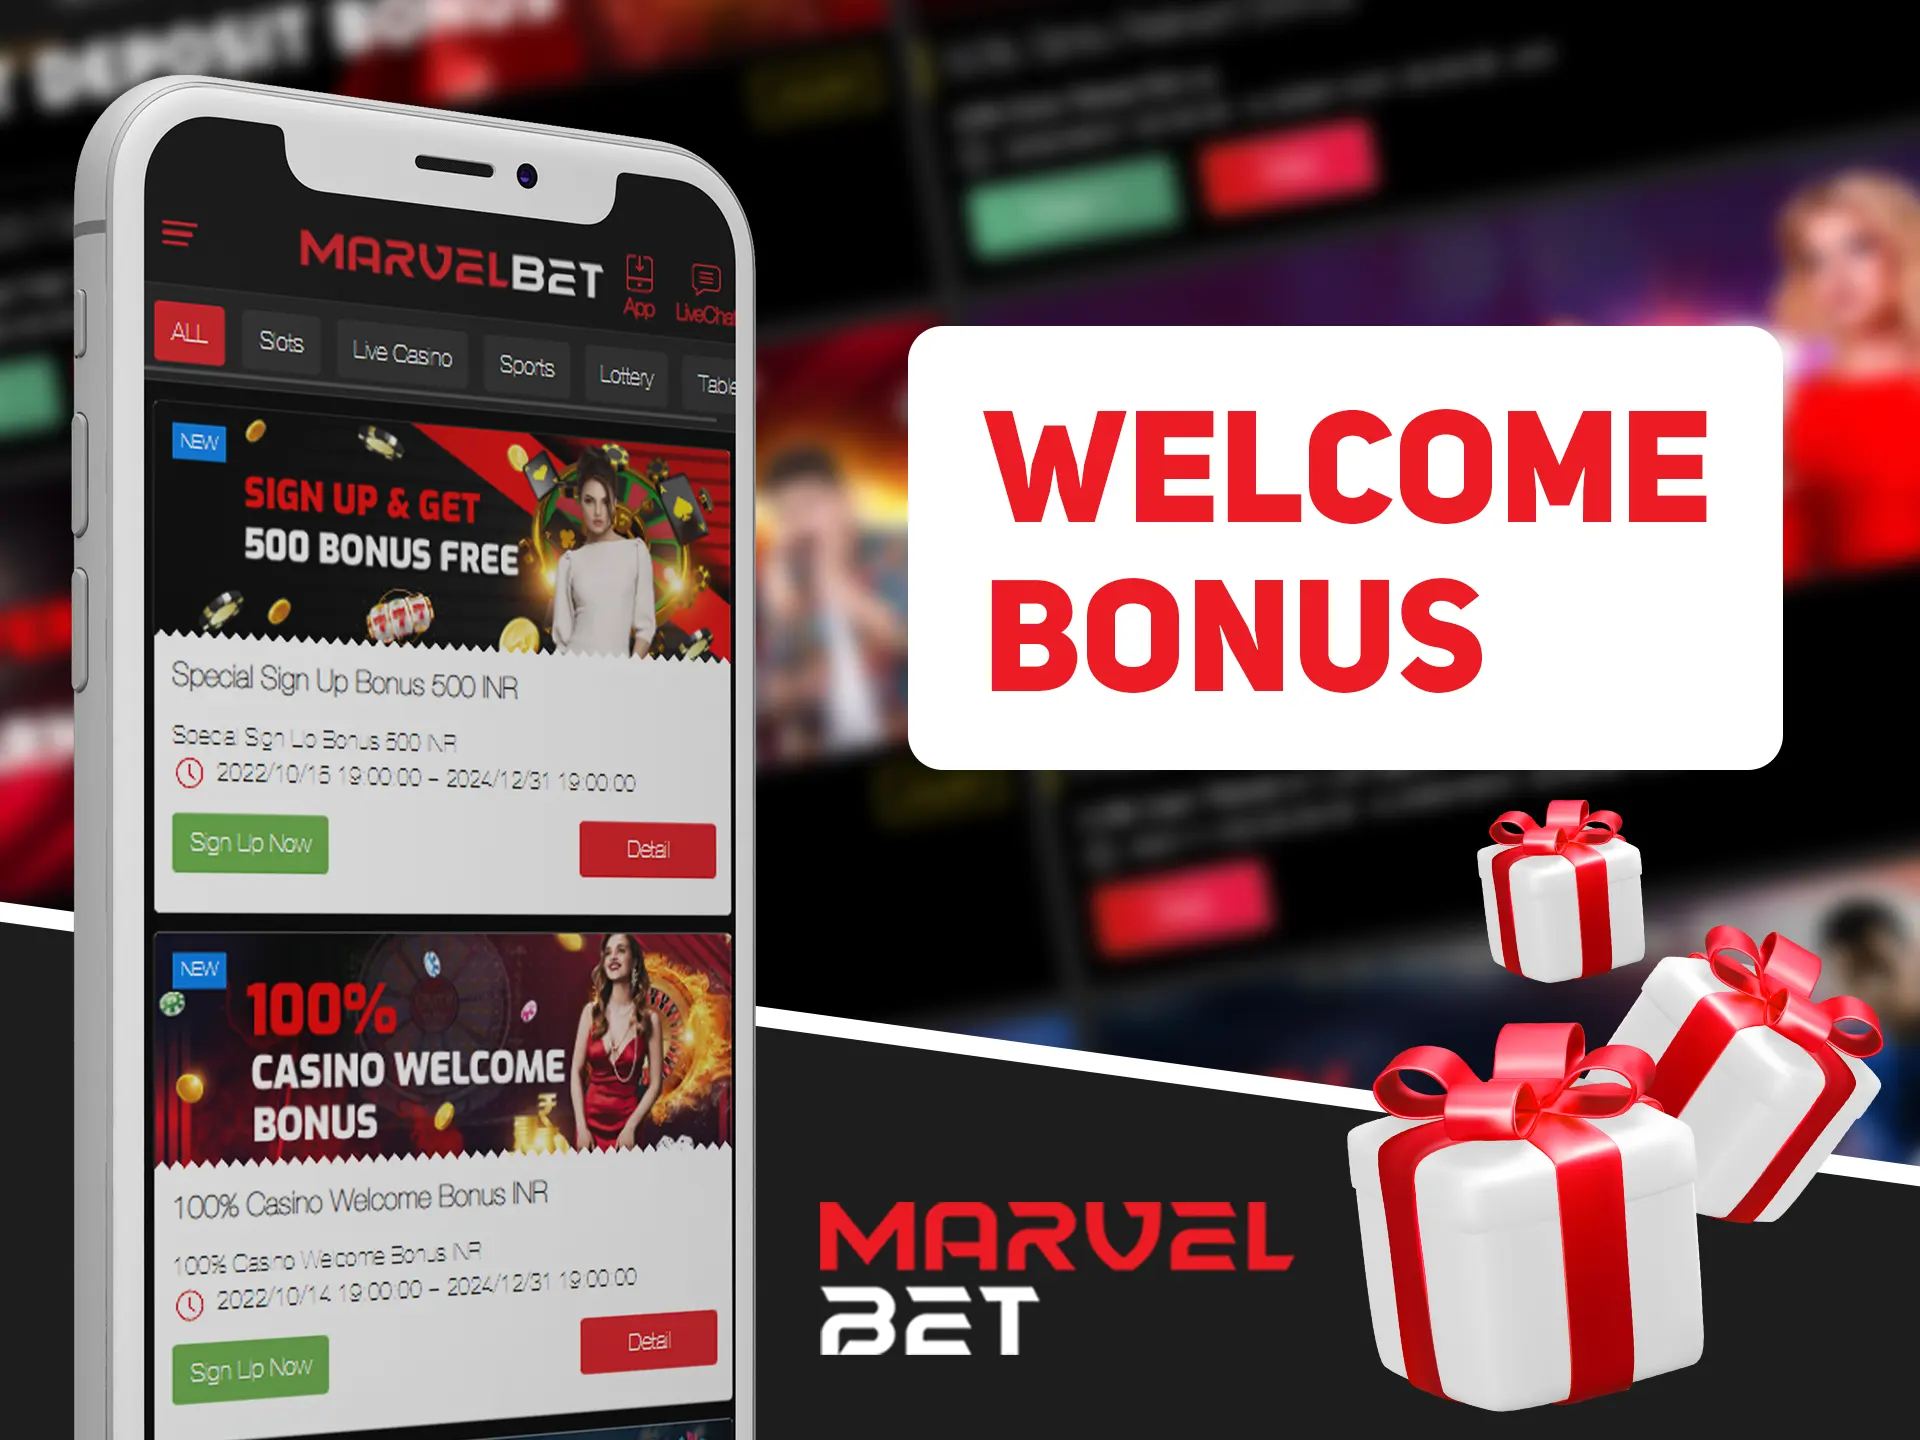 Register at Marvelbet website and get welcome bonus.